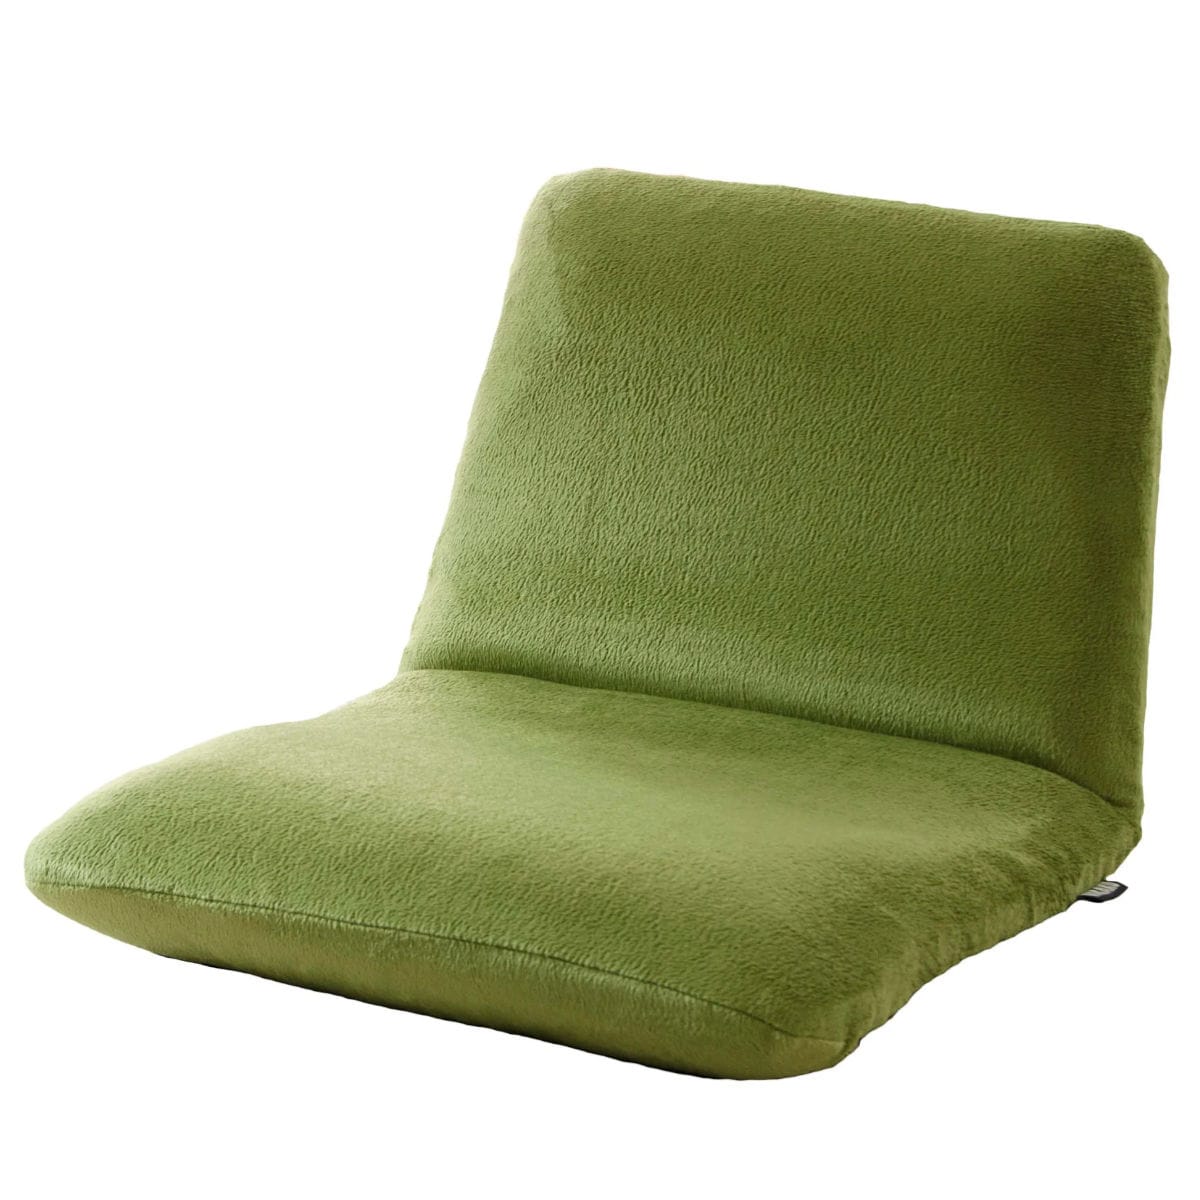 座椅子　緑椅子・チェア